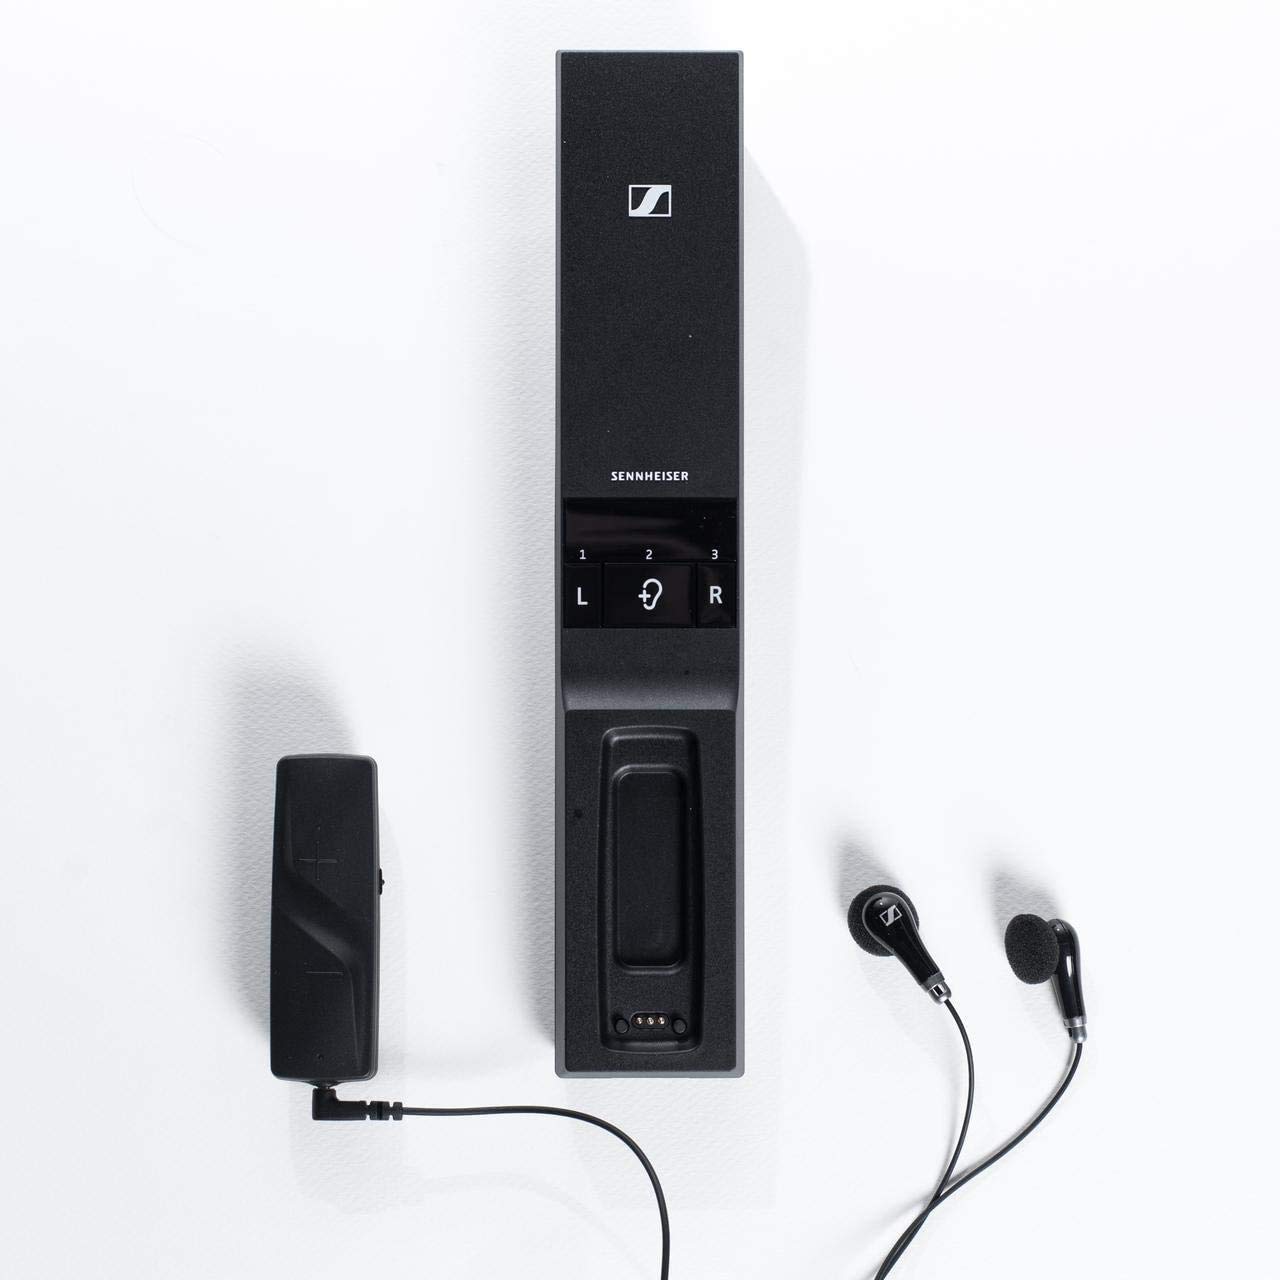 Sennheiser Consumer Audio टीवी सुनने के लिए फ्लेक्स 5000 डिजिटल वायरलेस हेडफ़ोन - काला